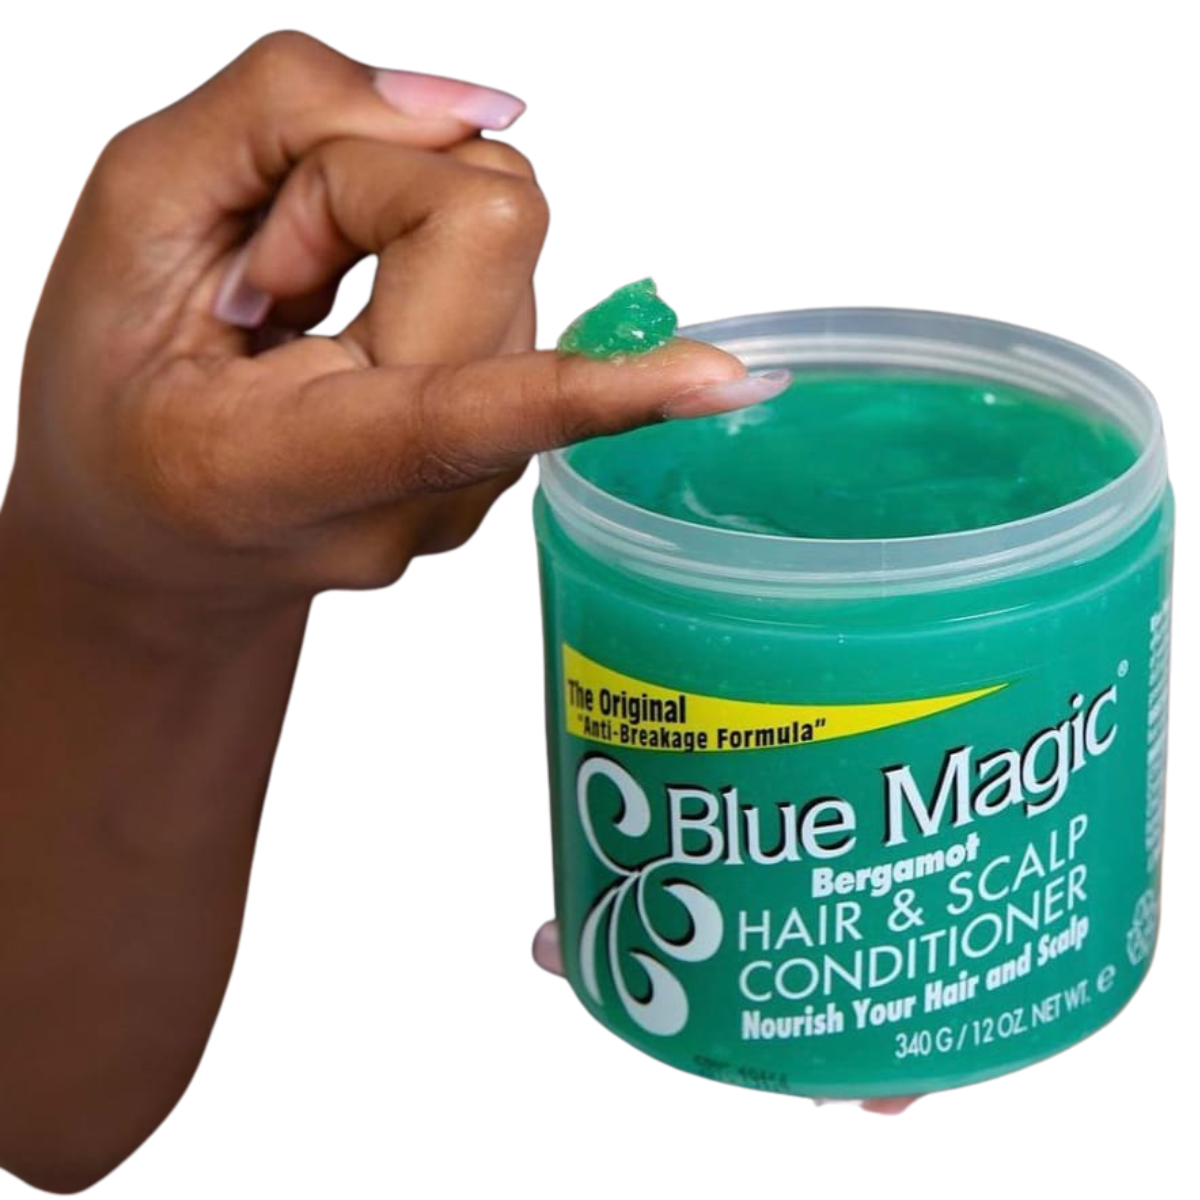 blue magic hair scalp conditioner comprar en onlineshoppingcenterg Colombia centro de compras en linea osc 3